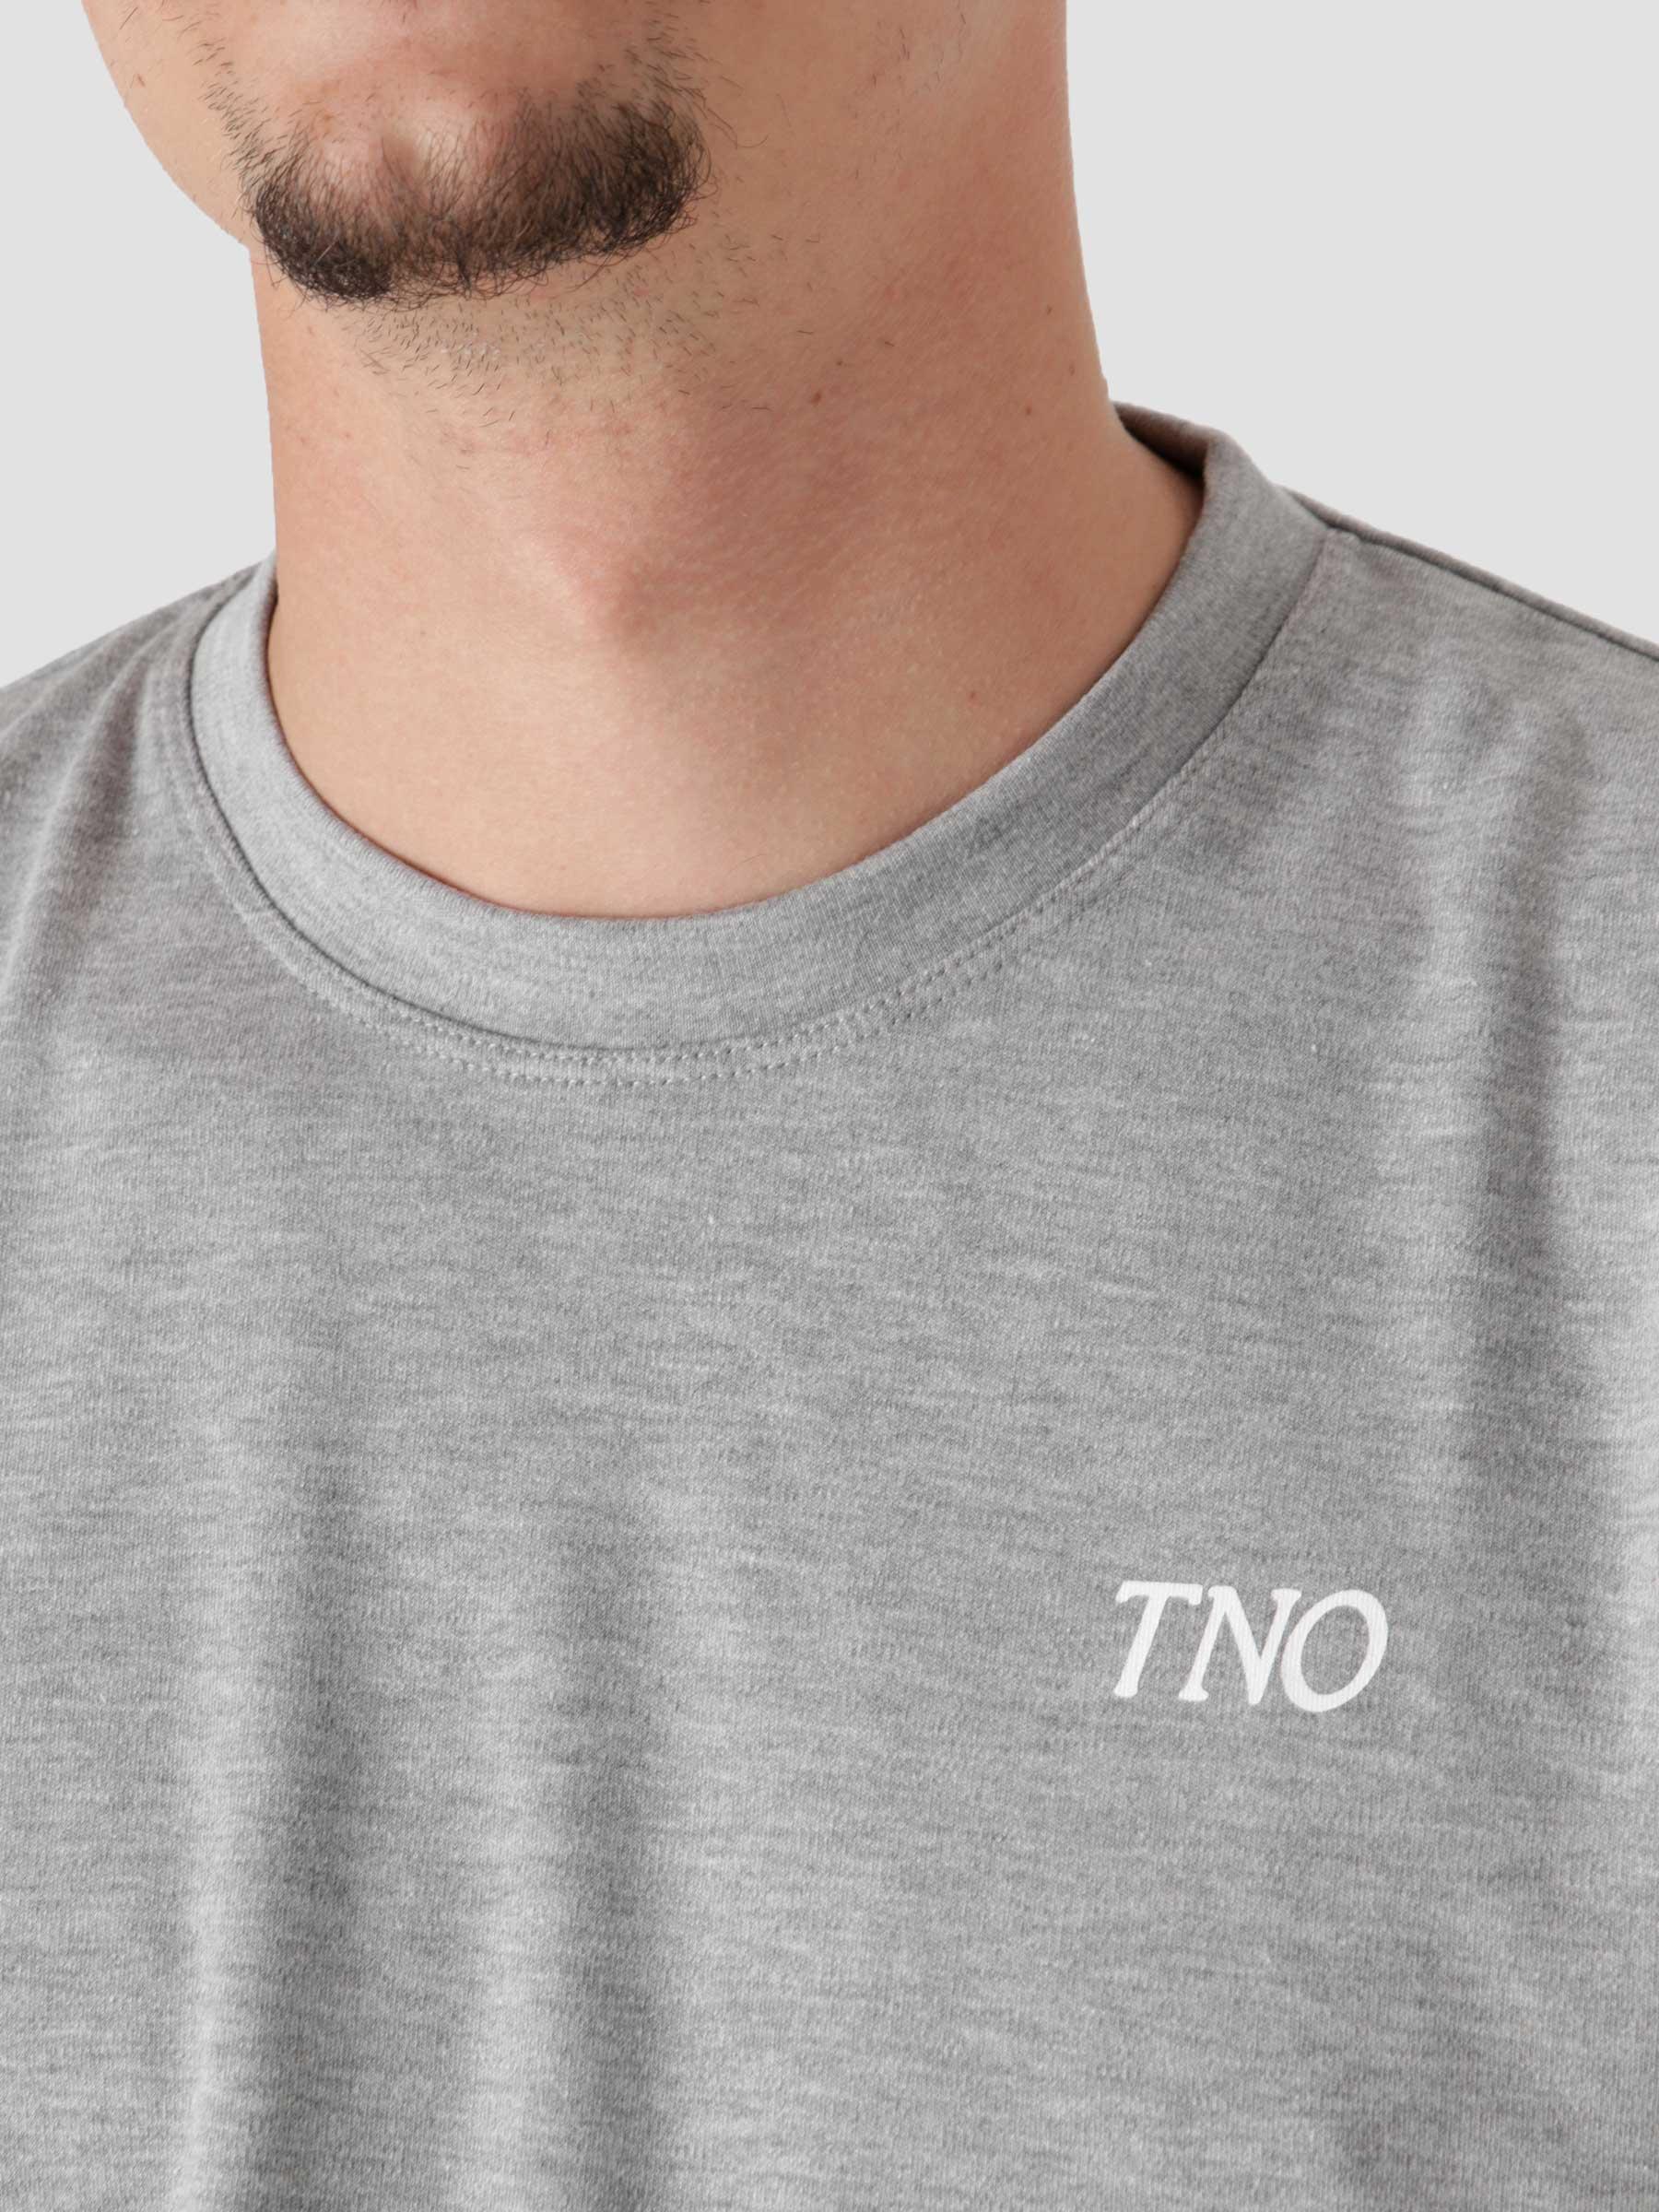 CATNA T-shirt Grey TNO211CAT100200